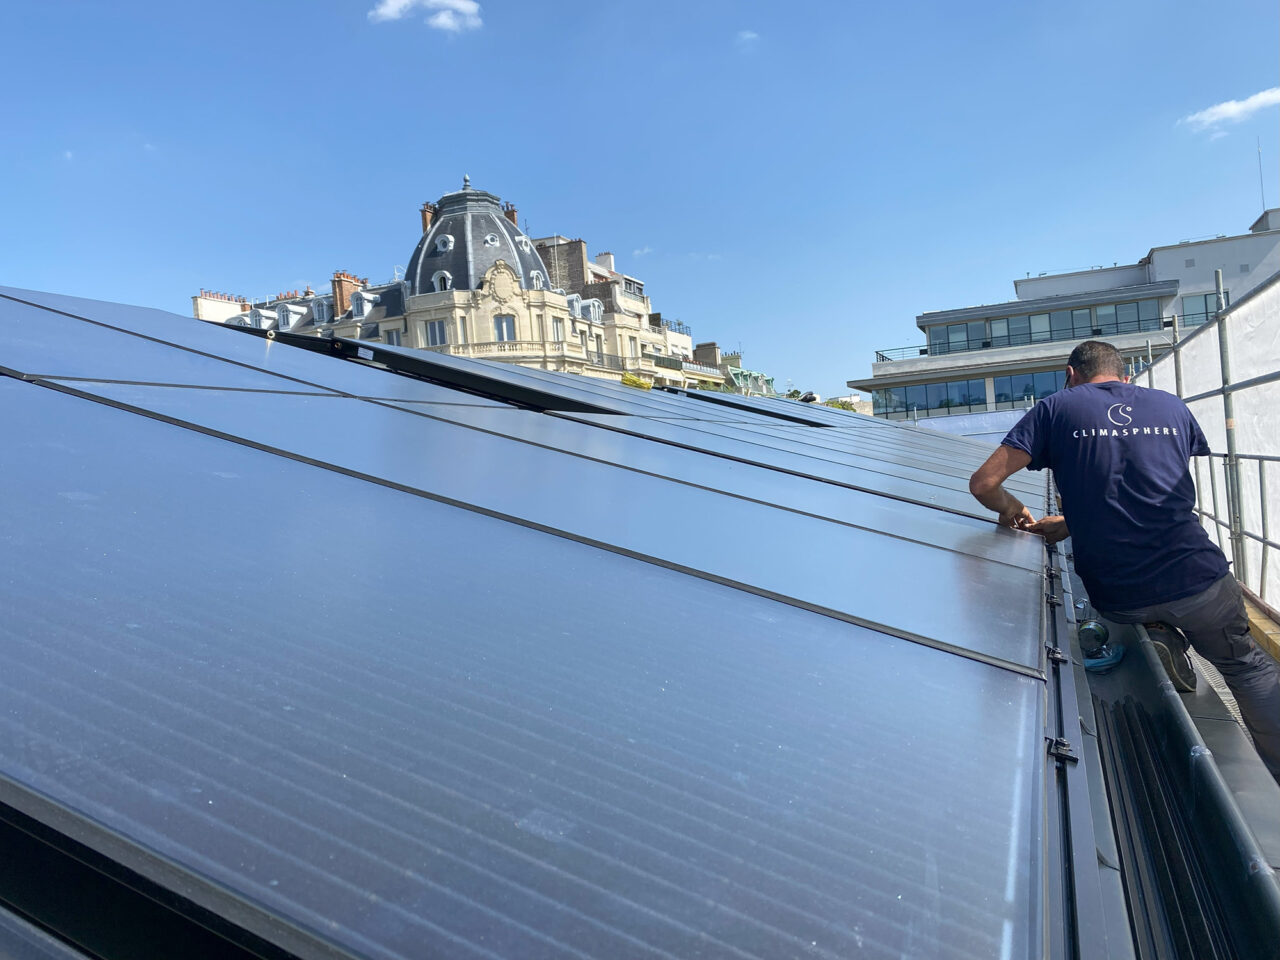 Installation de panneaux solaires photovoltaïques sur un toit, offrant une vue panoramique des toitures environnantes